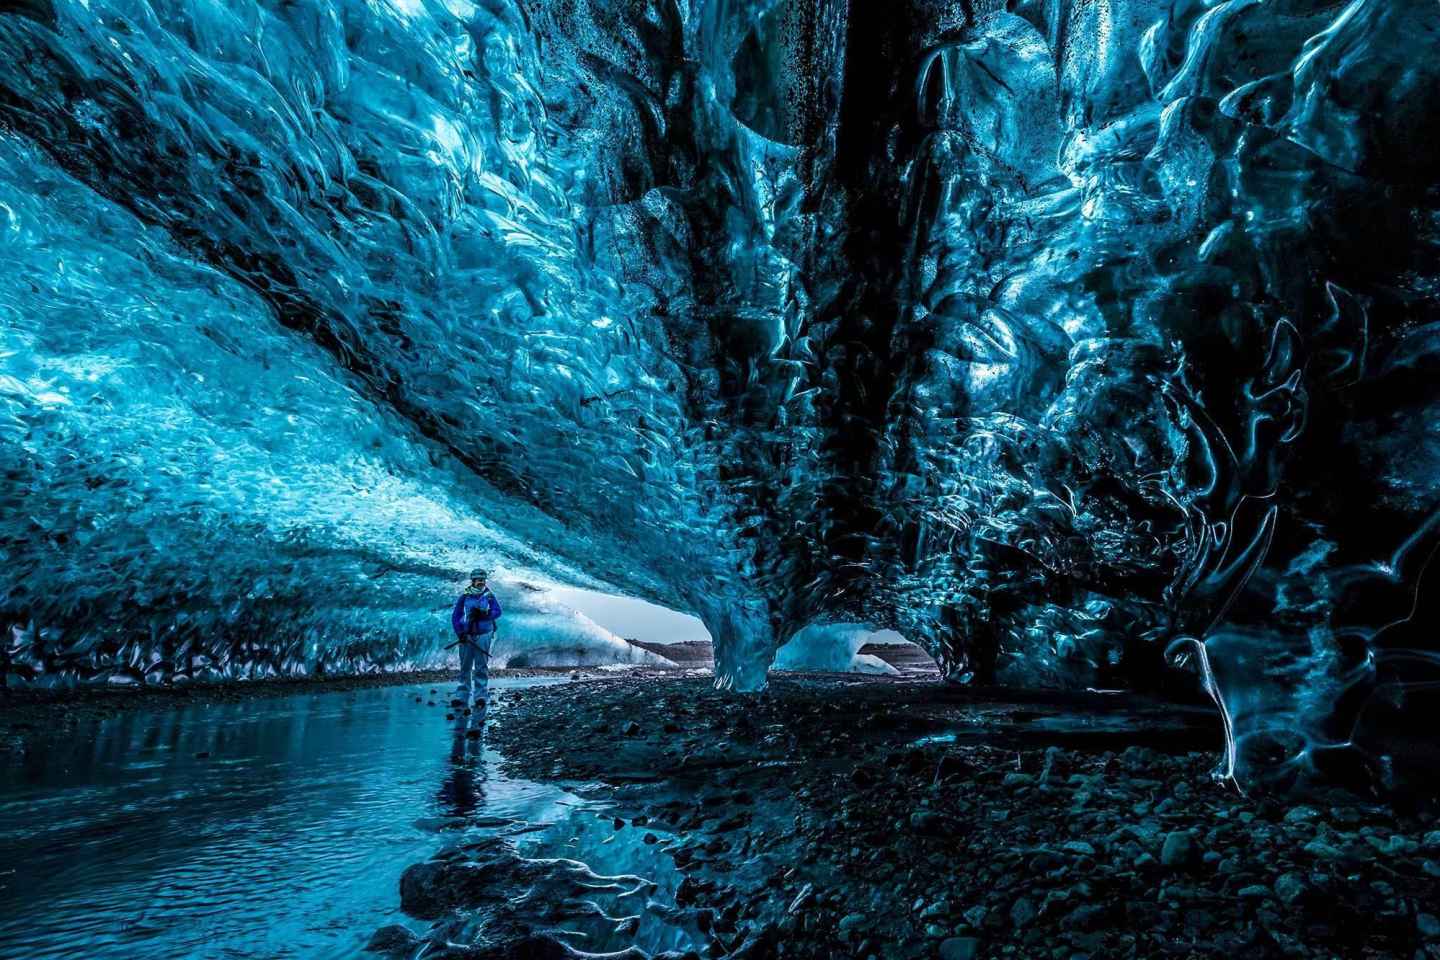 From Jökulsárlón: Crystal Ice Cave Guided Day Trip